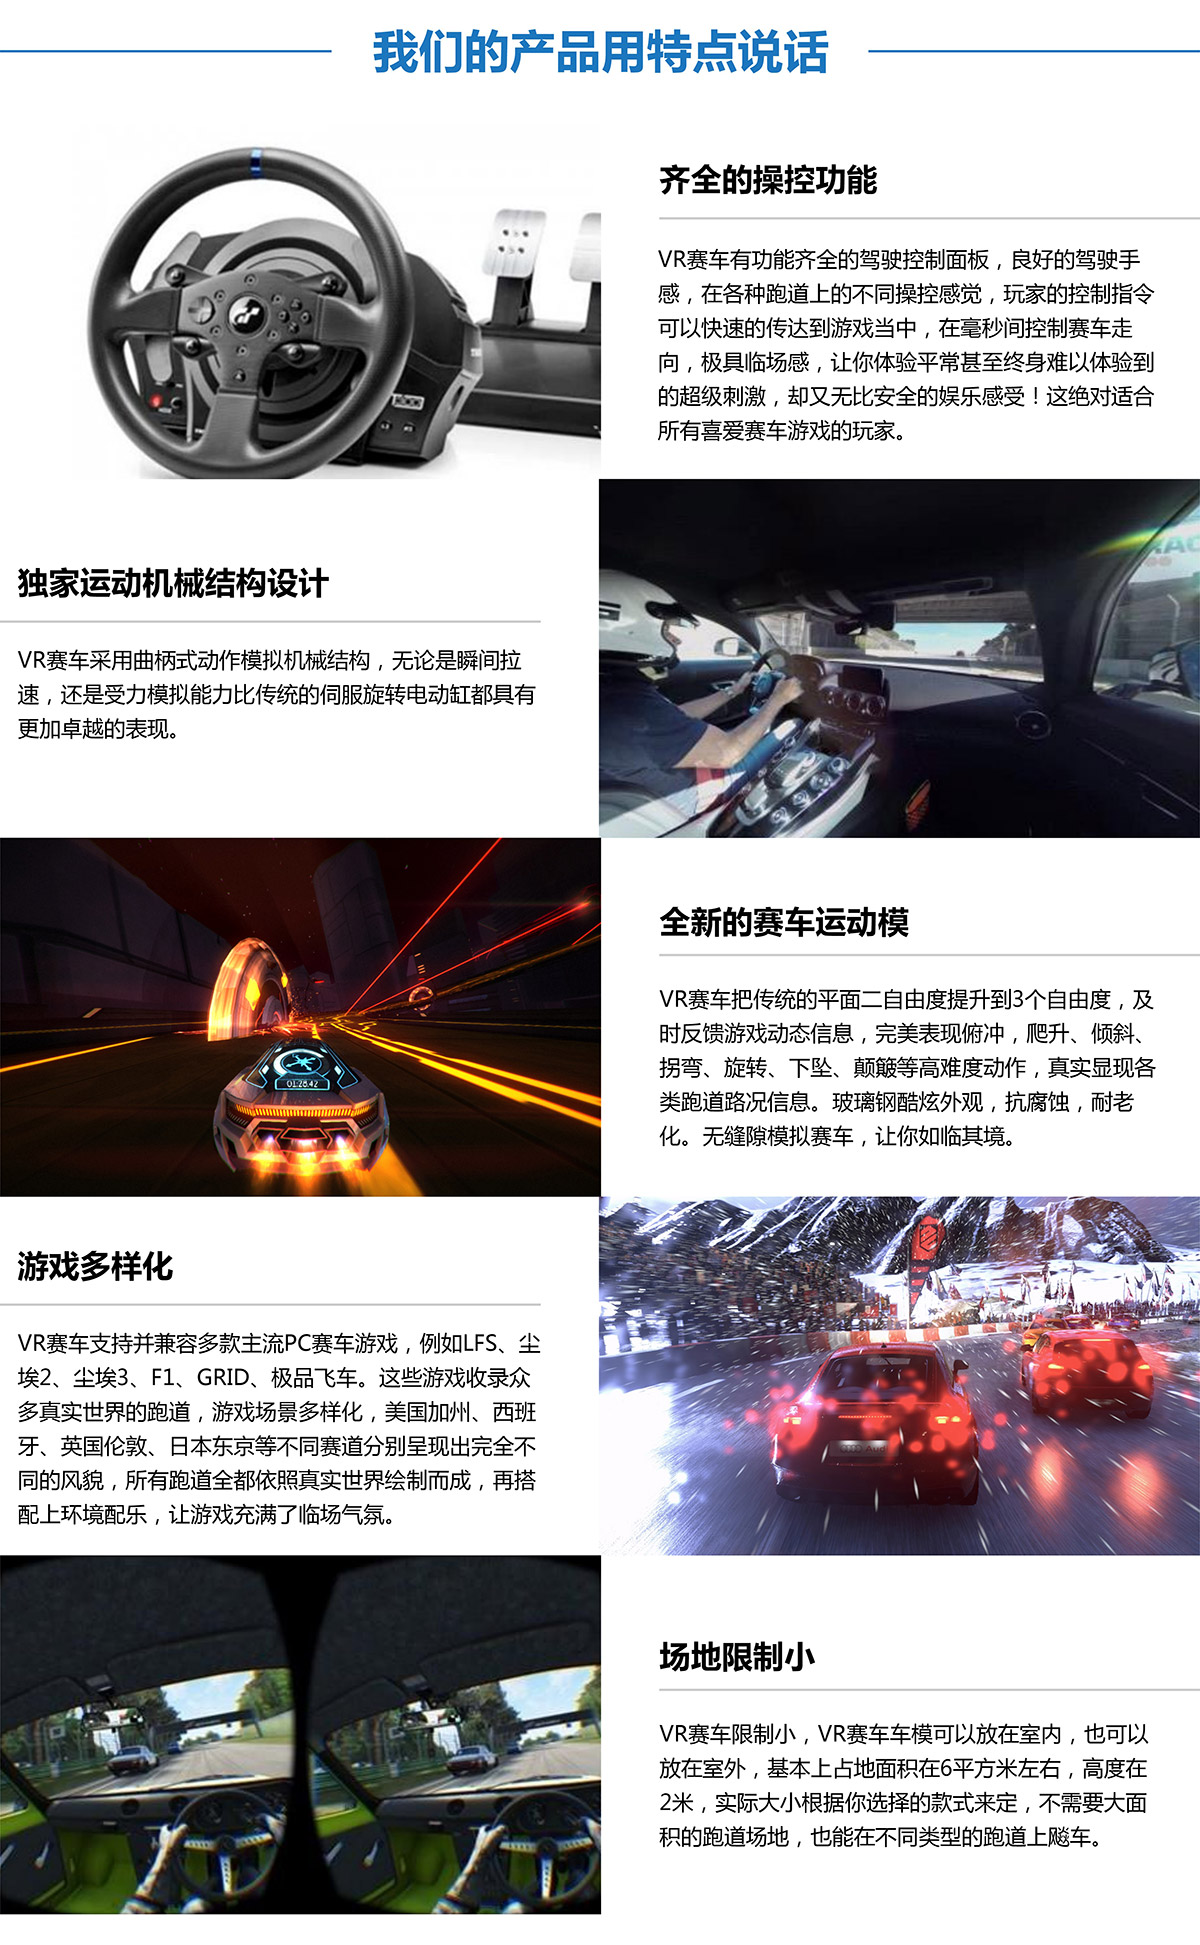 互动电影虚拟VR赛车产品用特点说话.jpg